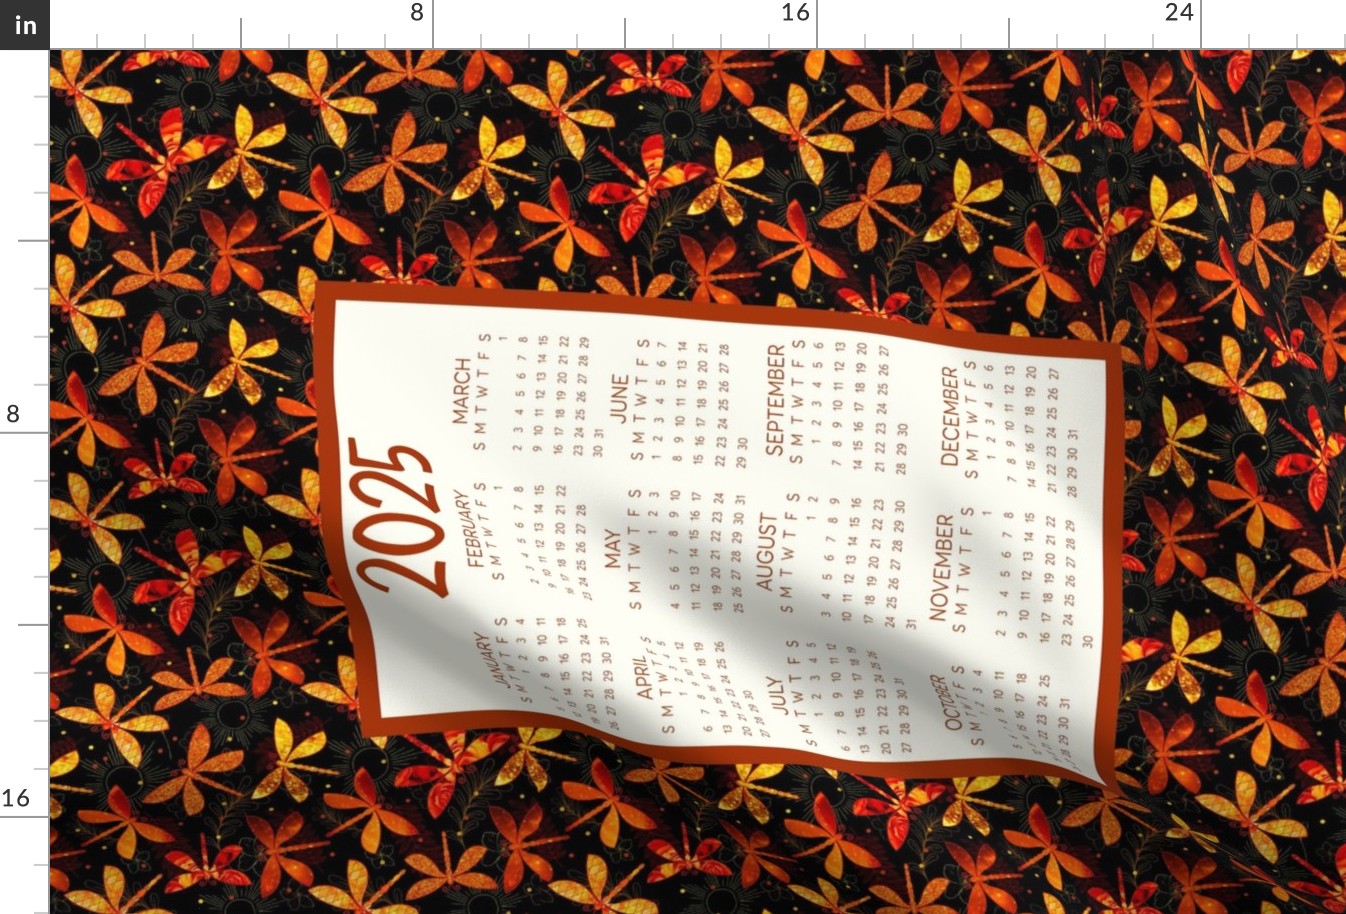 2025 Calendar Fat Quarter Tea Towel Wall Hanging Amber Dragonflies